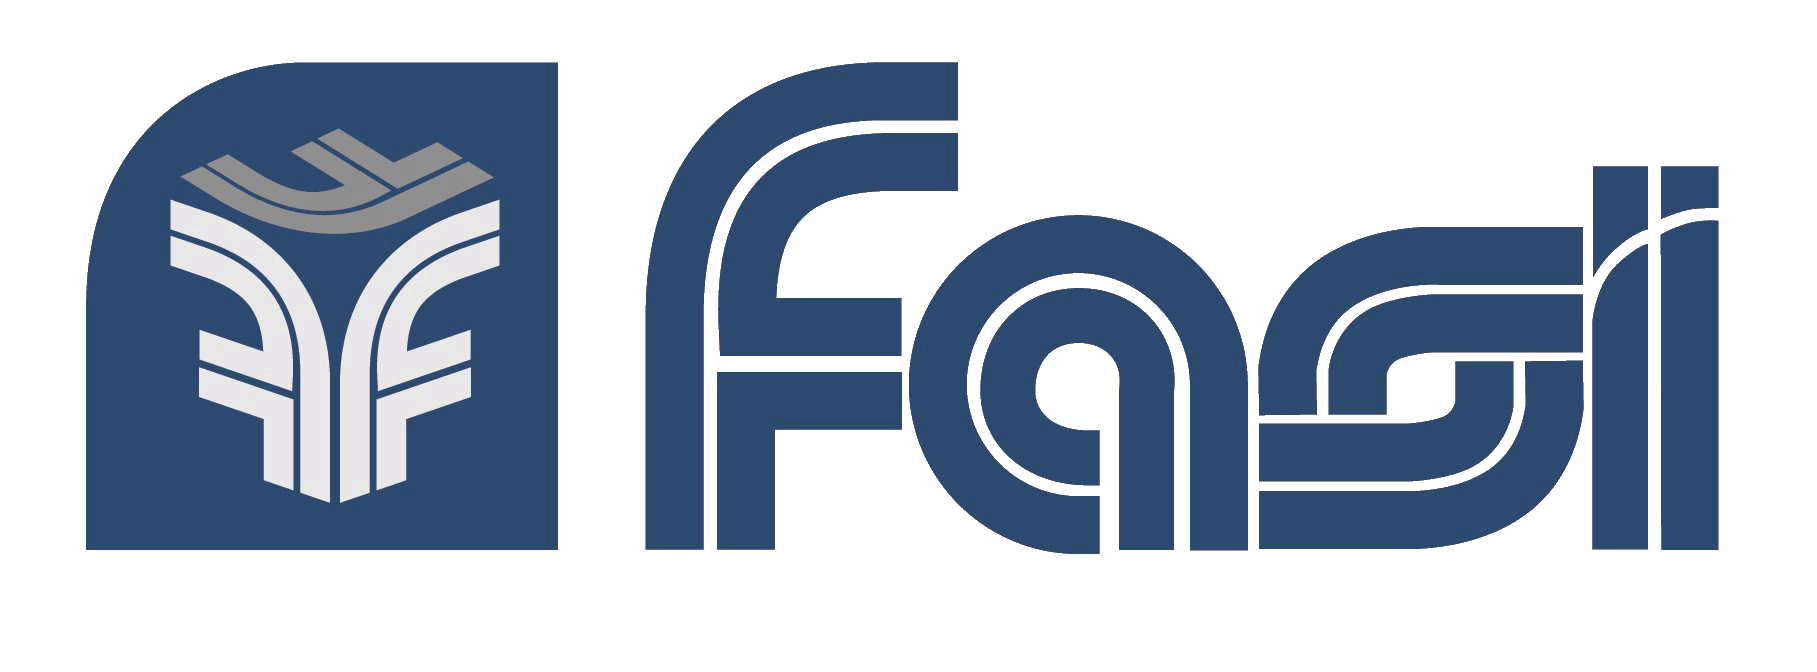 FASI – Fondo Assistenza Integrativa